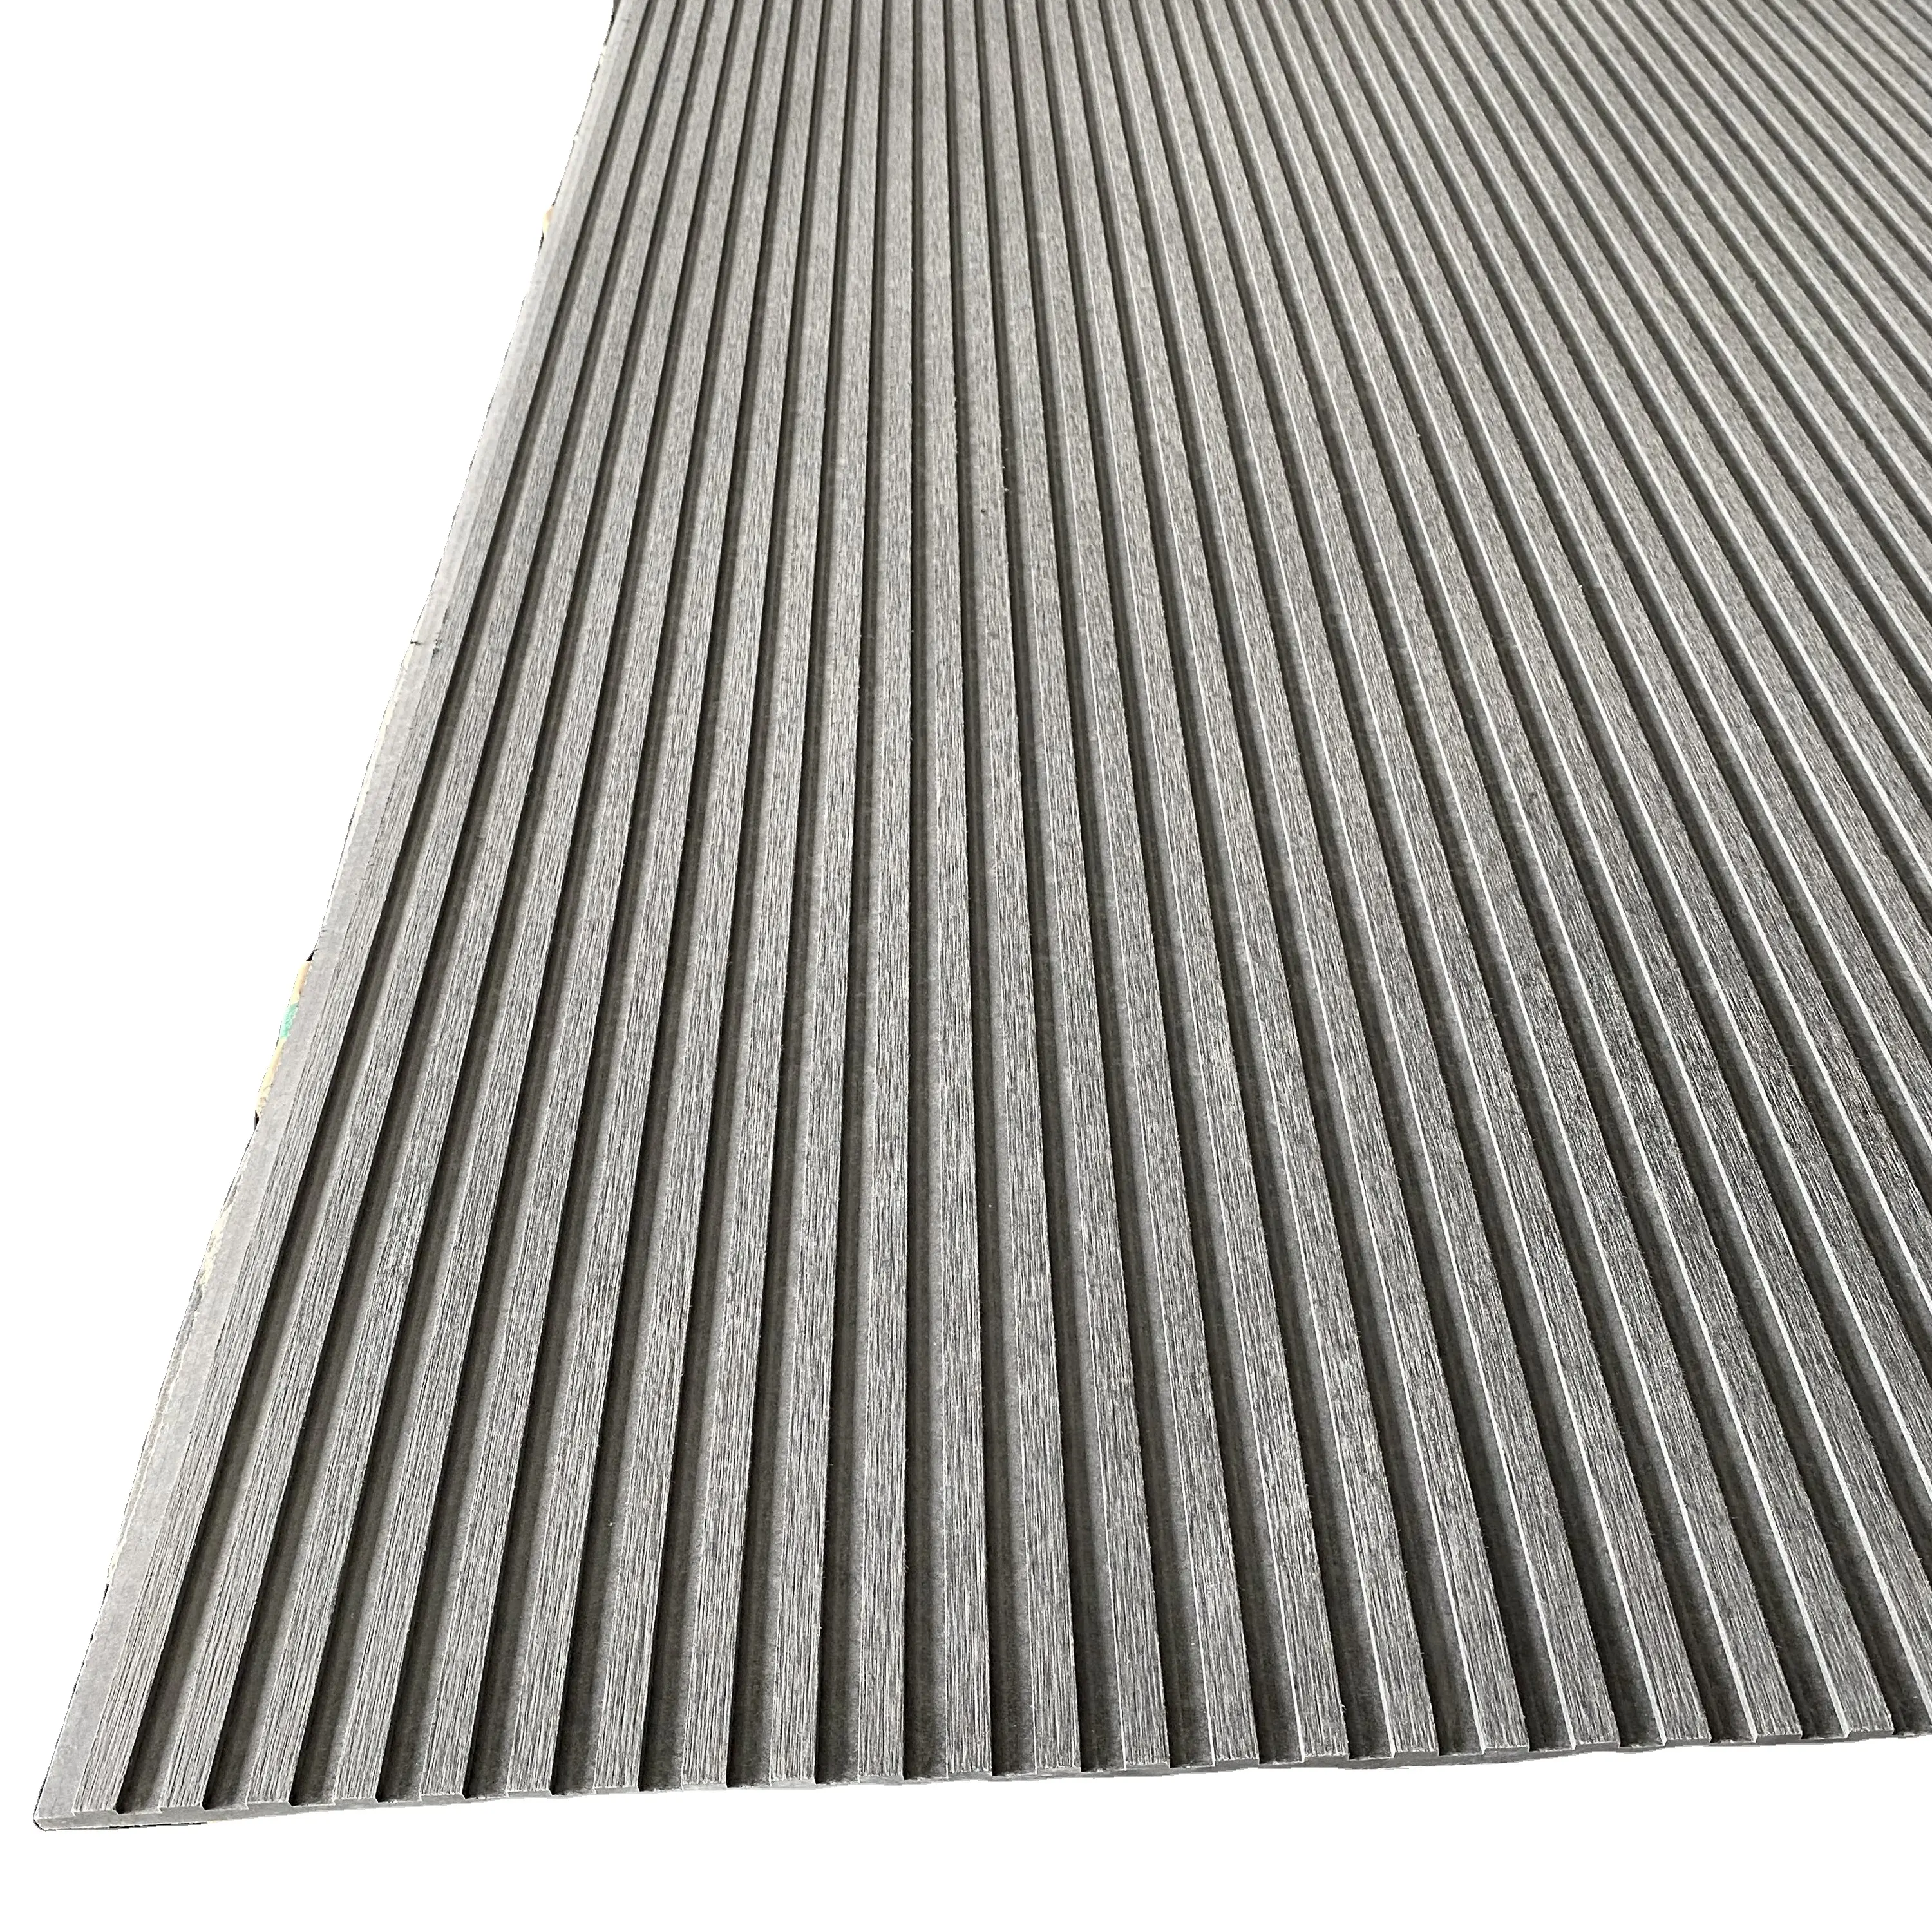 Panneau de ciment renforcé de fibres mur extérieur plat cloison panneau de ciment panneau de ciment de fibres